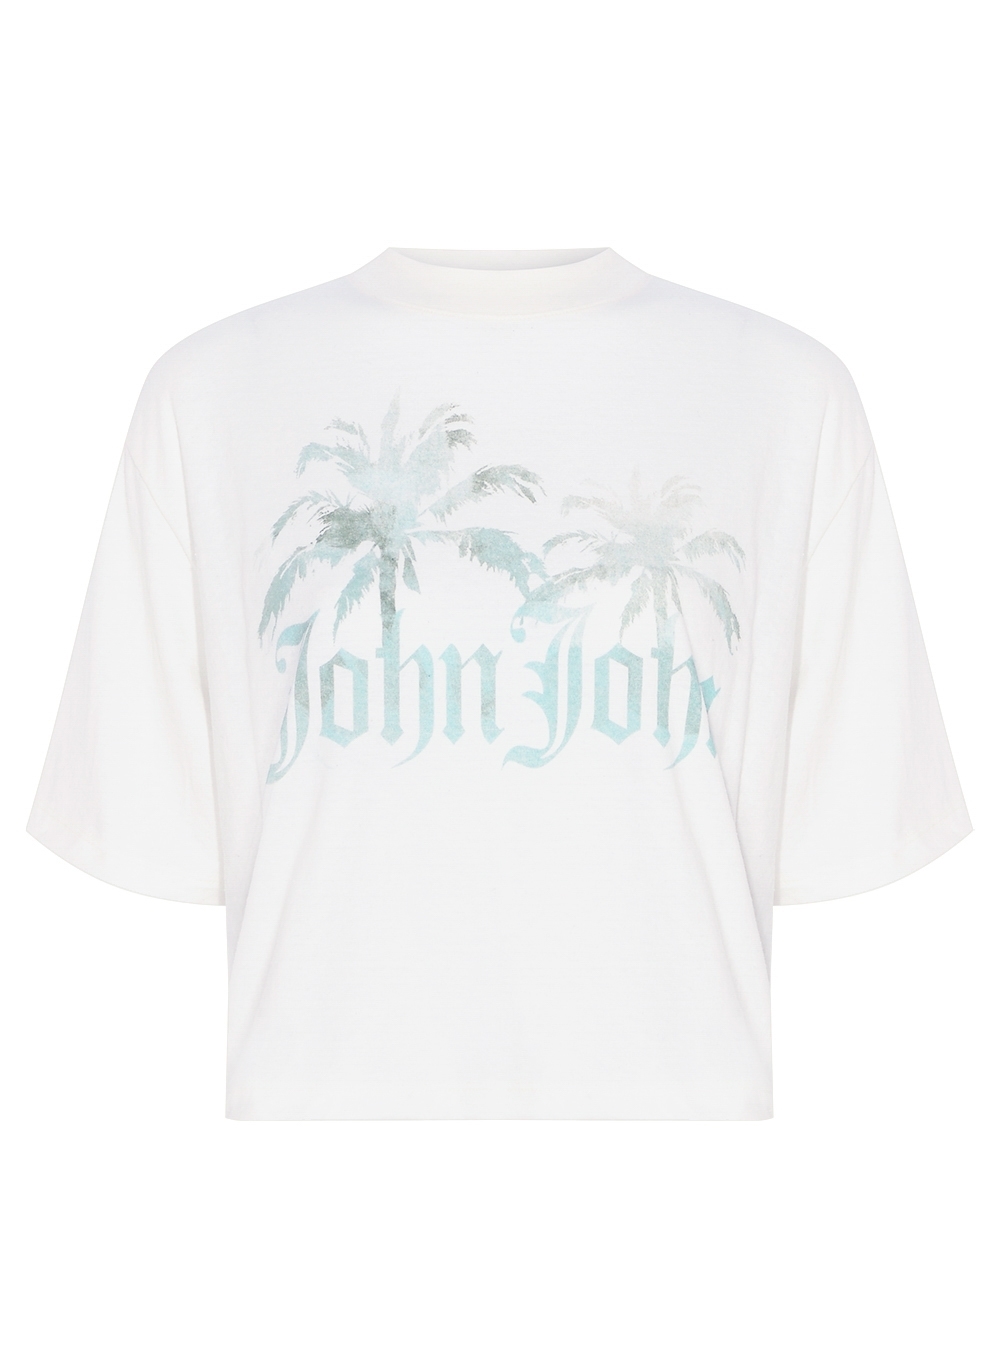 Camiseta John John Mix Feminina 03.62.0213 - Camiseta John John Mix Feminina  - JOHN JOHN FEM